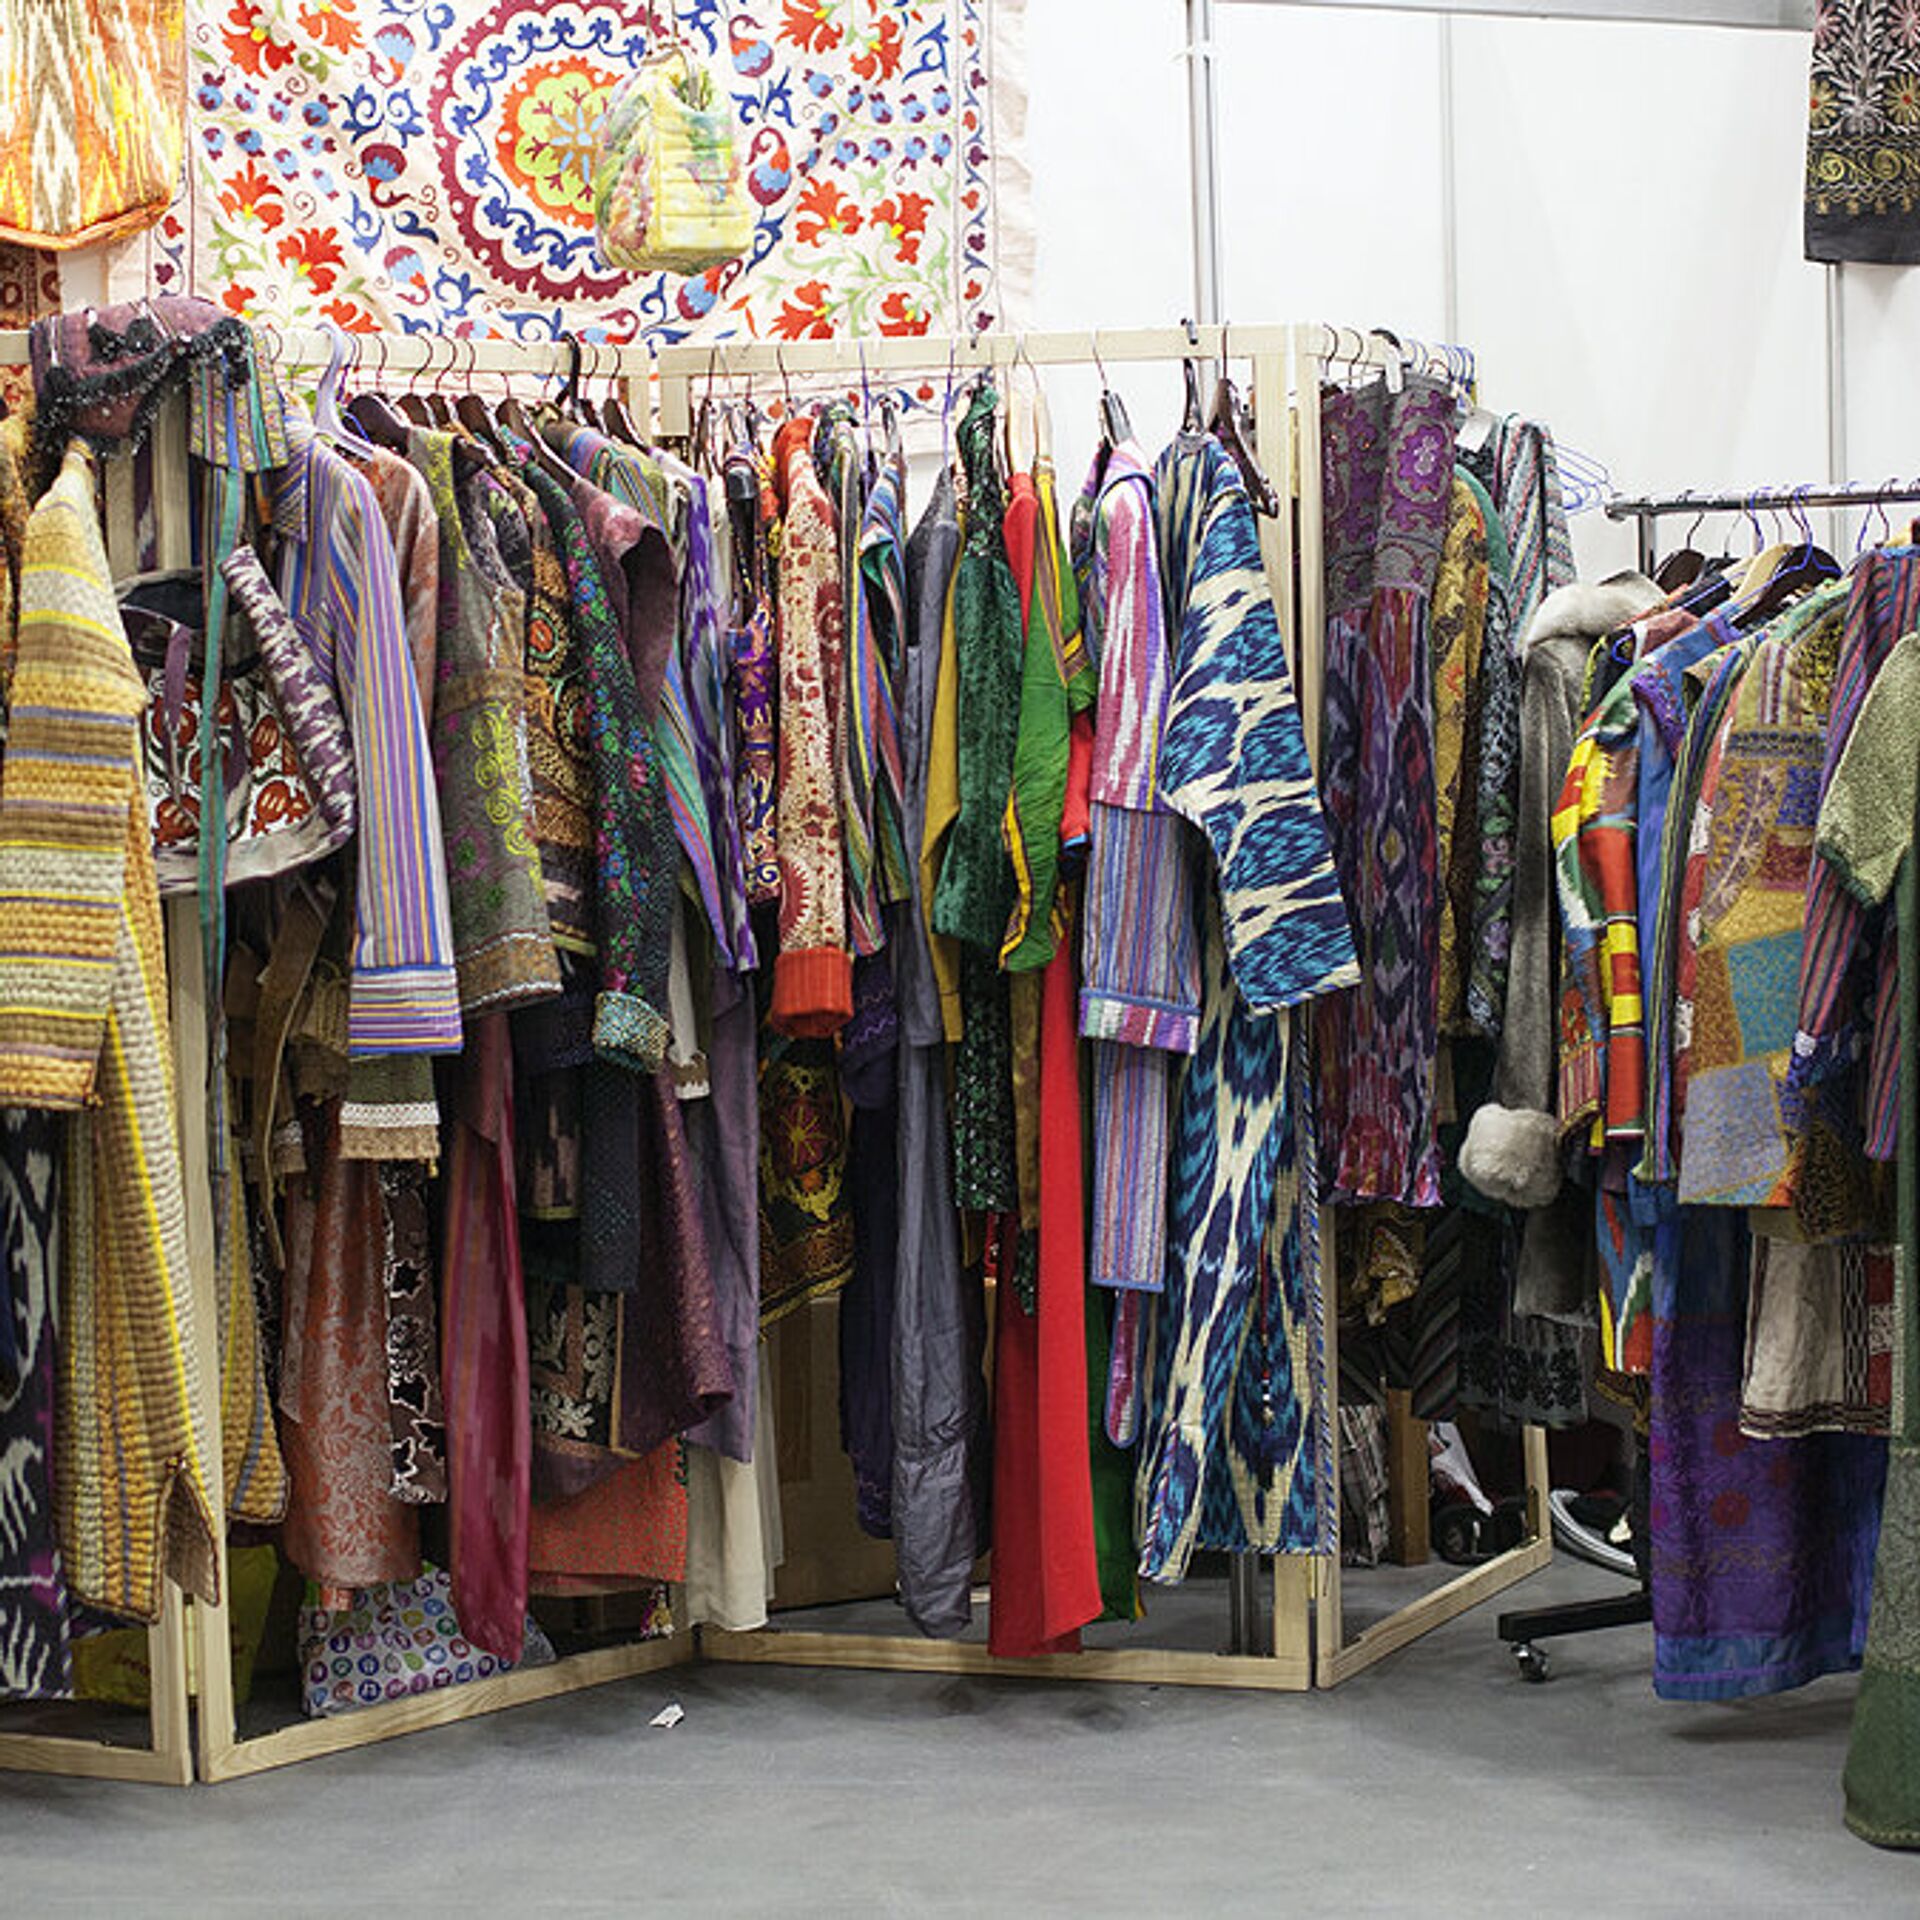 Ташкент магазины одежды. Узбекская Национальная одежда. Узбекистанский трикотаж. Таджикские ткани. Узбекская Национальная одежда женская.